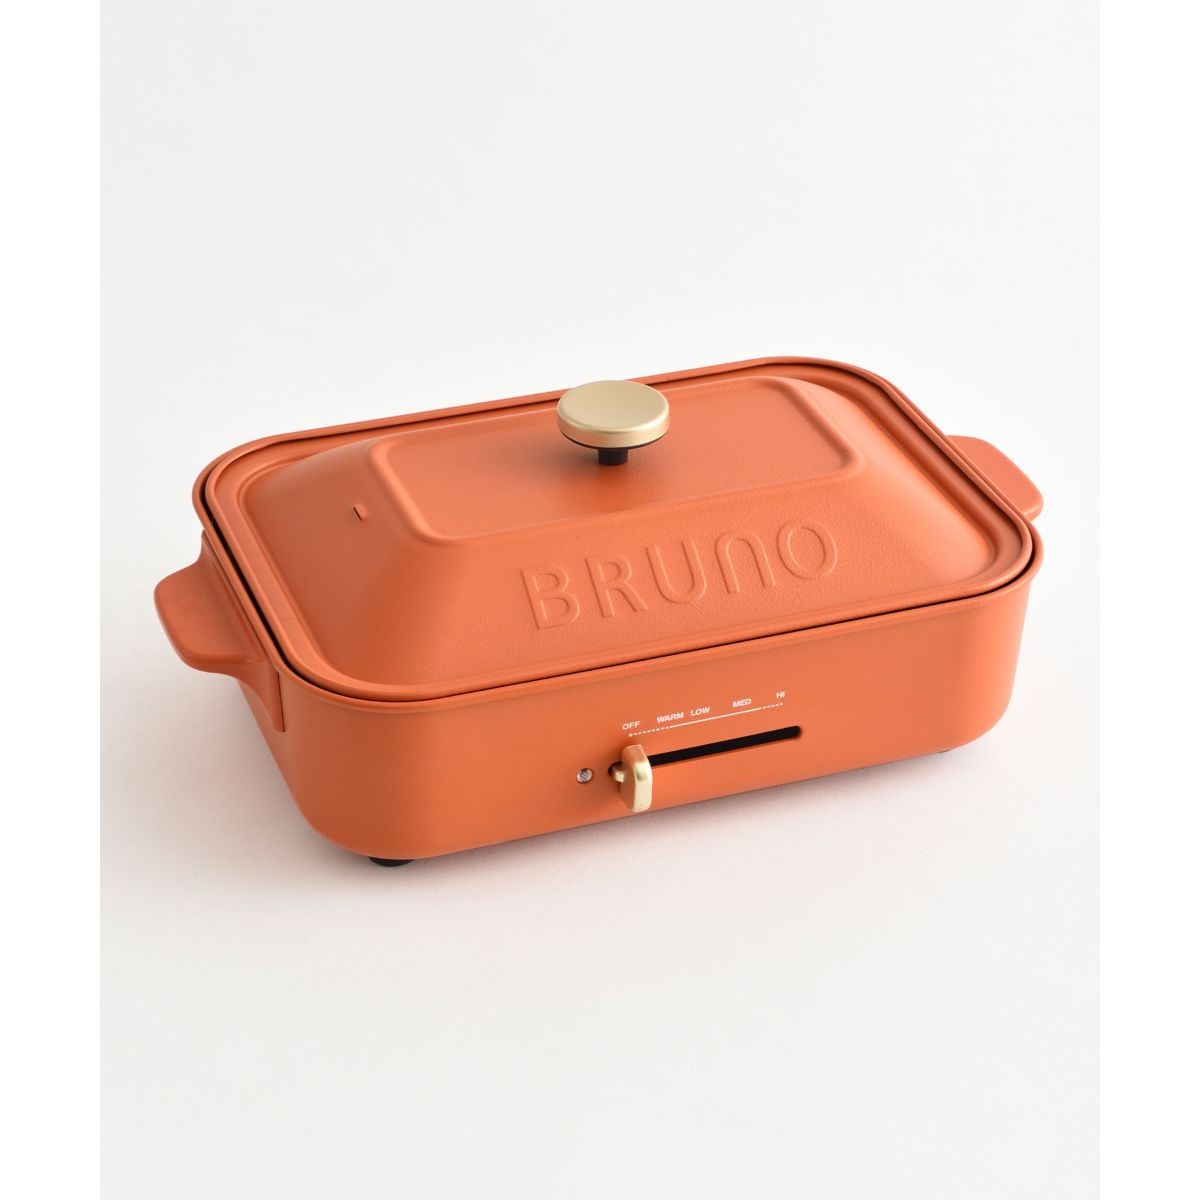 直営店限定カラー BRUNO コンパクトホットプレート ピンクベージュ